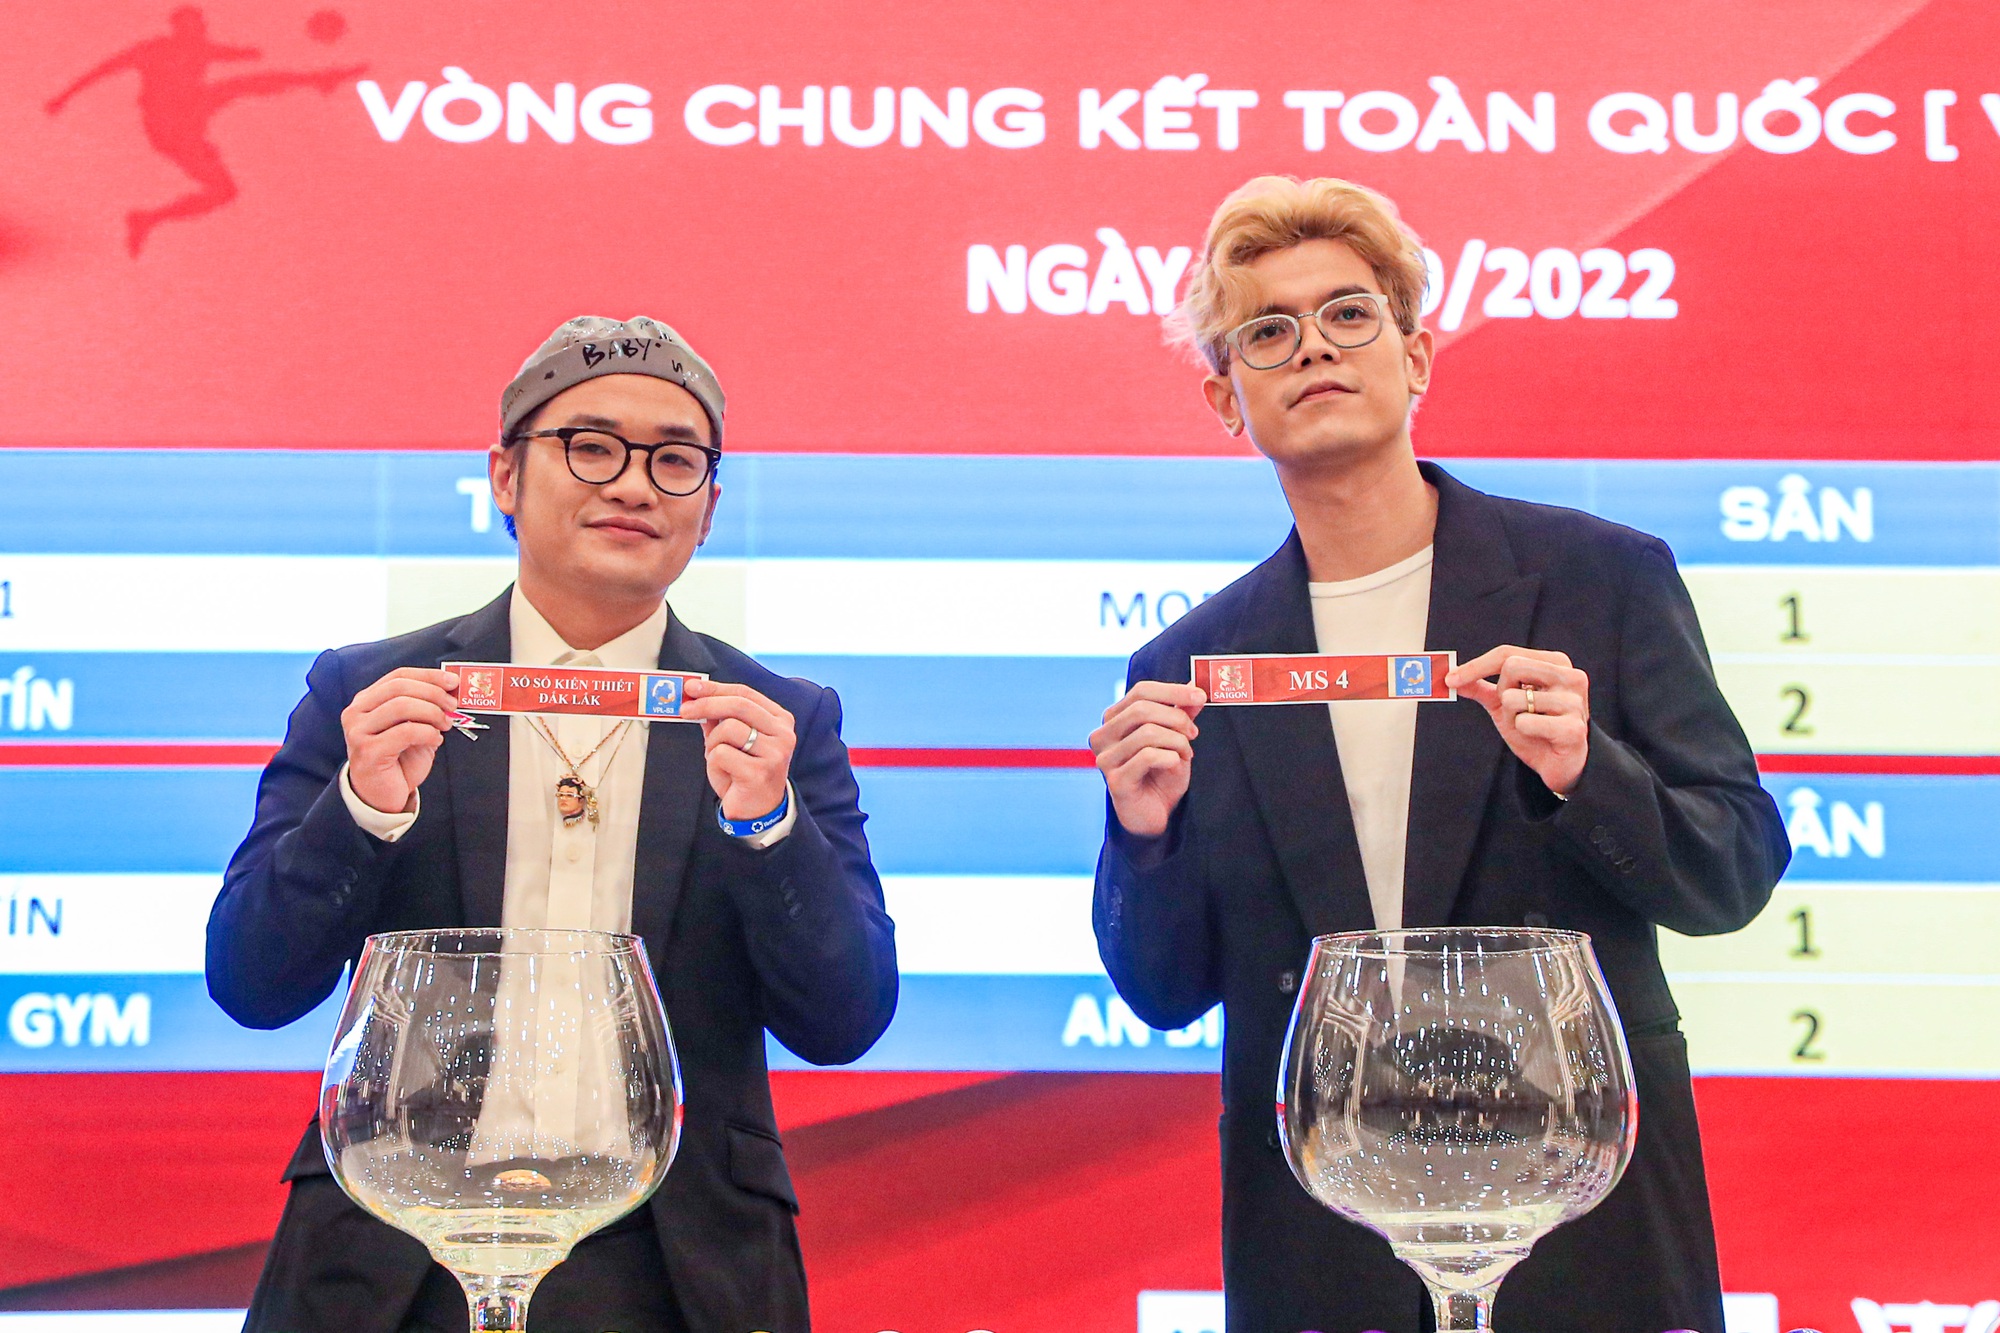 Giải bóng đá 7 người: Đội vô địch sẽ có cơ hội đá 'so tài' cùng với đội tuyển Việt Nam - Ảnh 2.